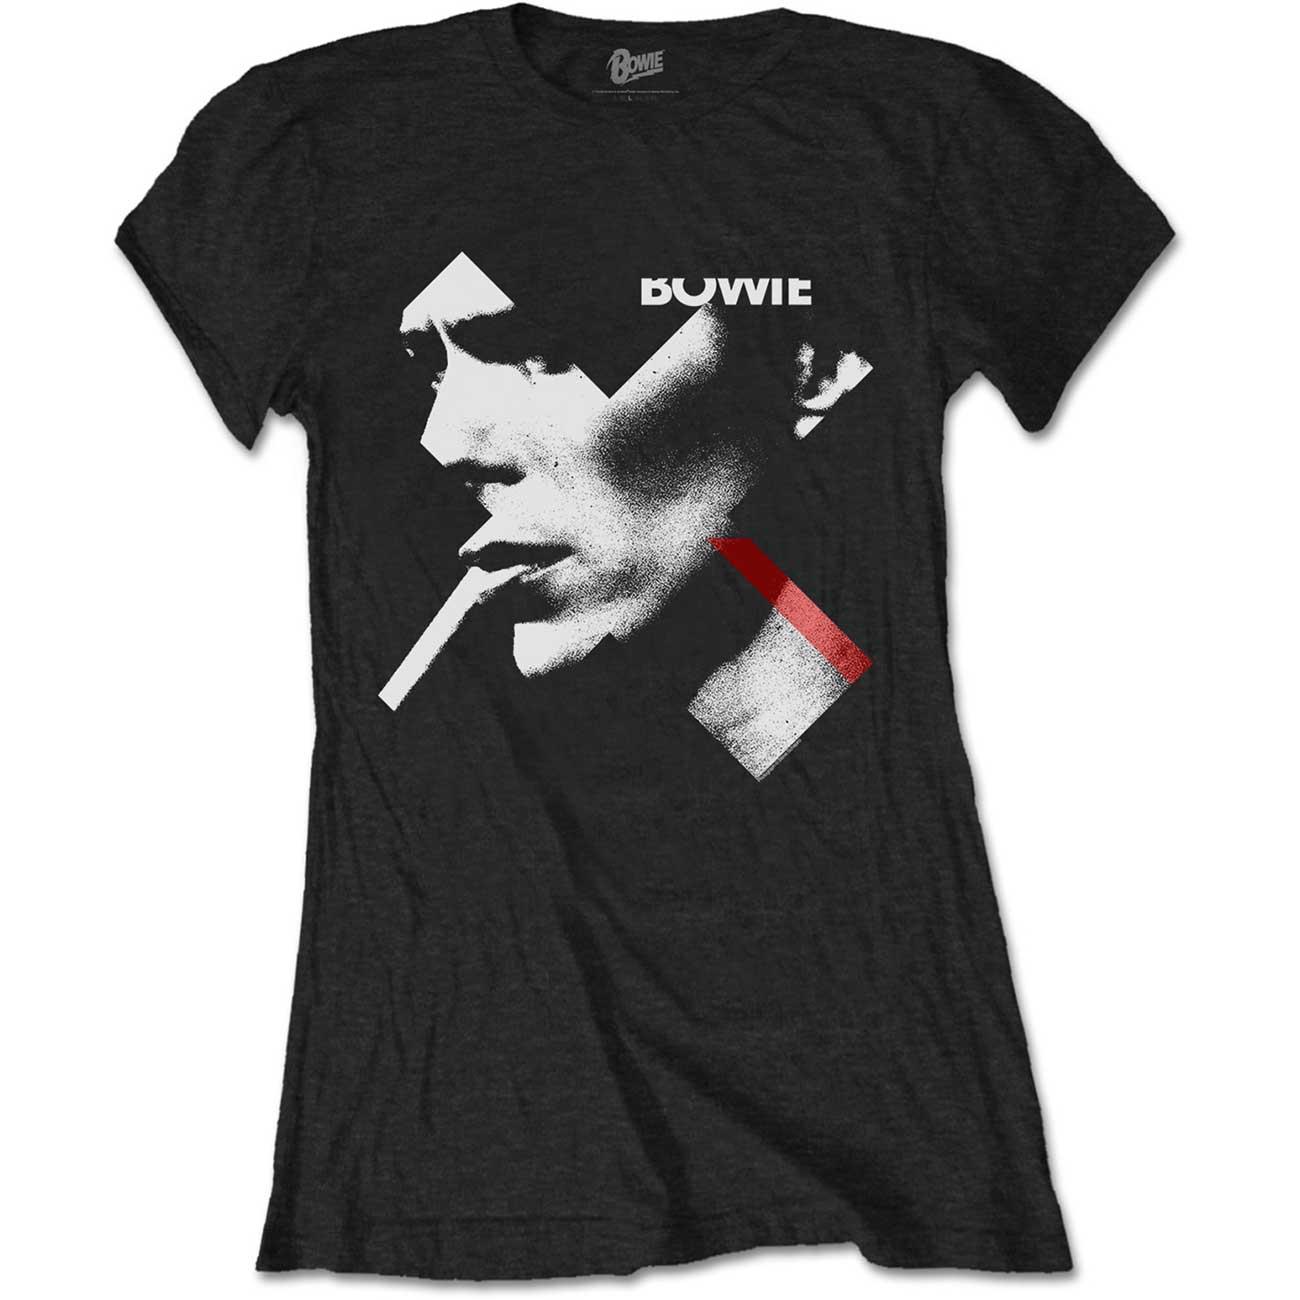 (デヴィッド・ボウイ) David Bowie オフィシャル商品 レディース Smoke Tシャツ 半袖 トップス 【海外通販】